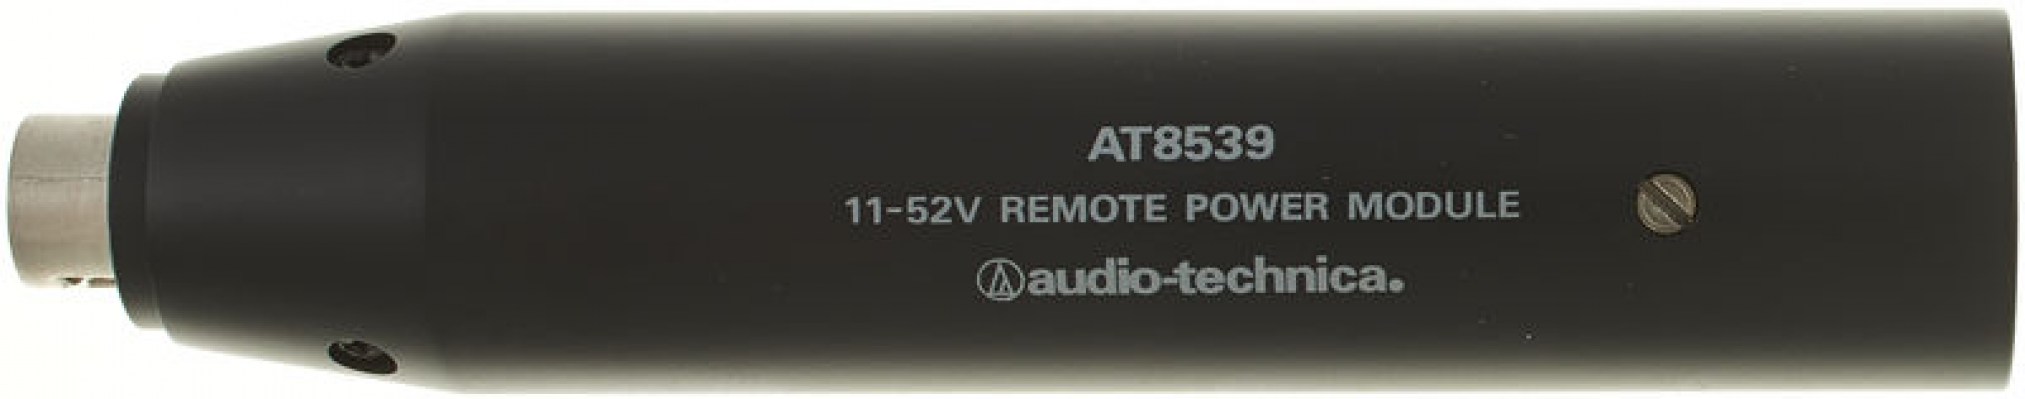 Audio-Technica AT8539